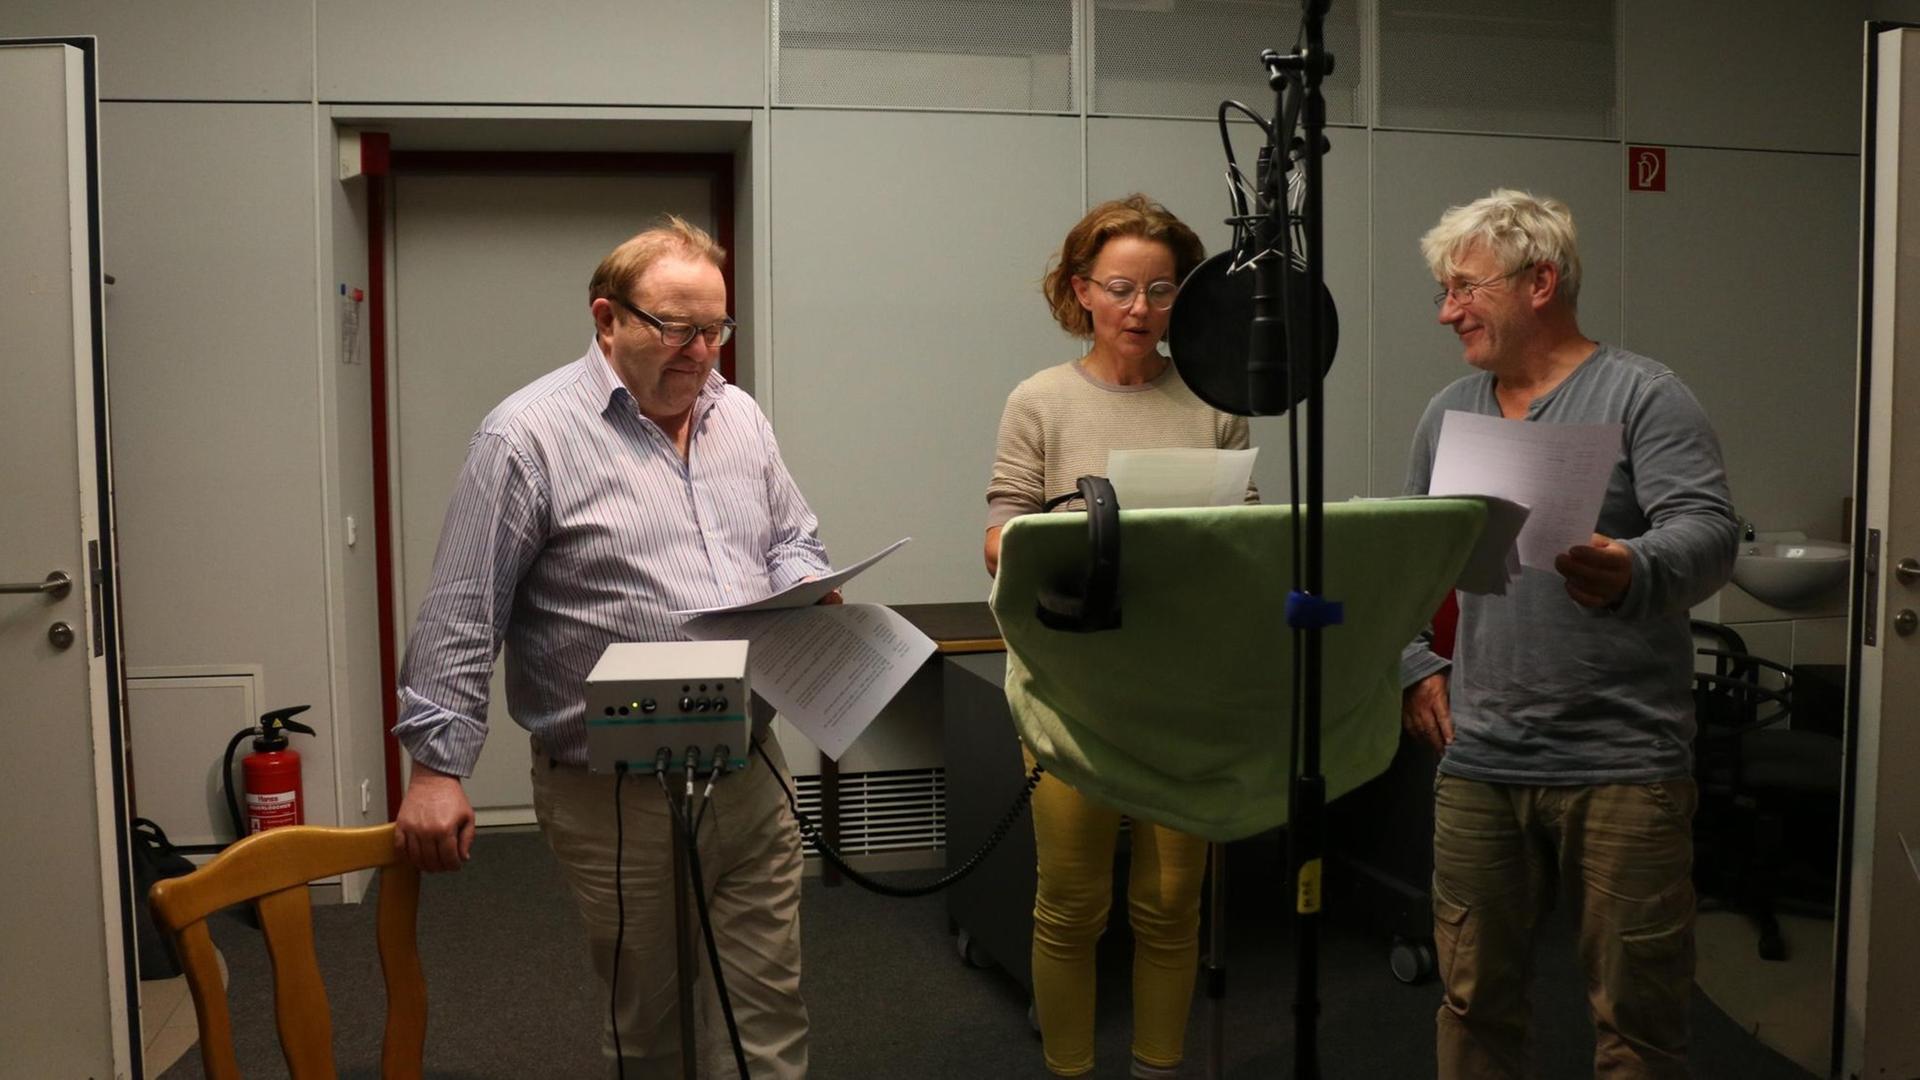 Aufnahmen zur Hörspielproduktion "Manitu" - Gustav Peter Wöhler, Carina Wiese und Jörg Schüttauf im Hörspielstudio